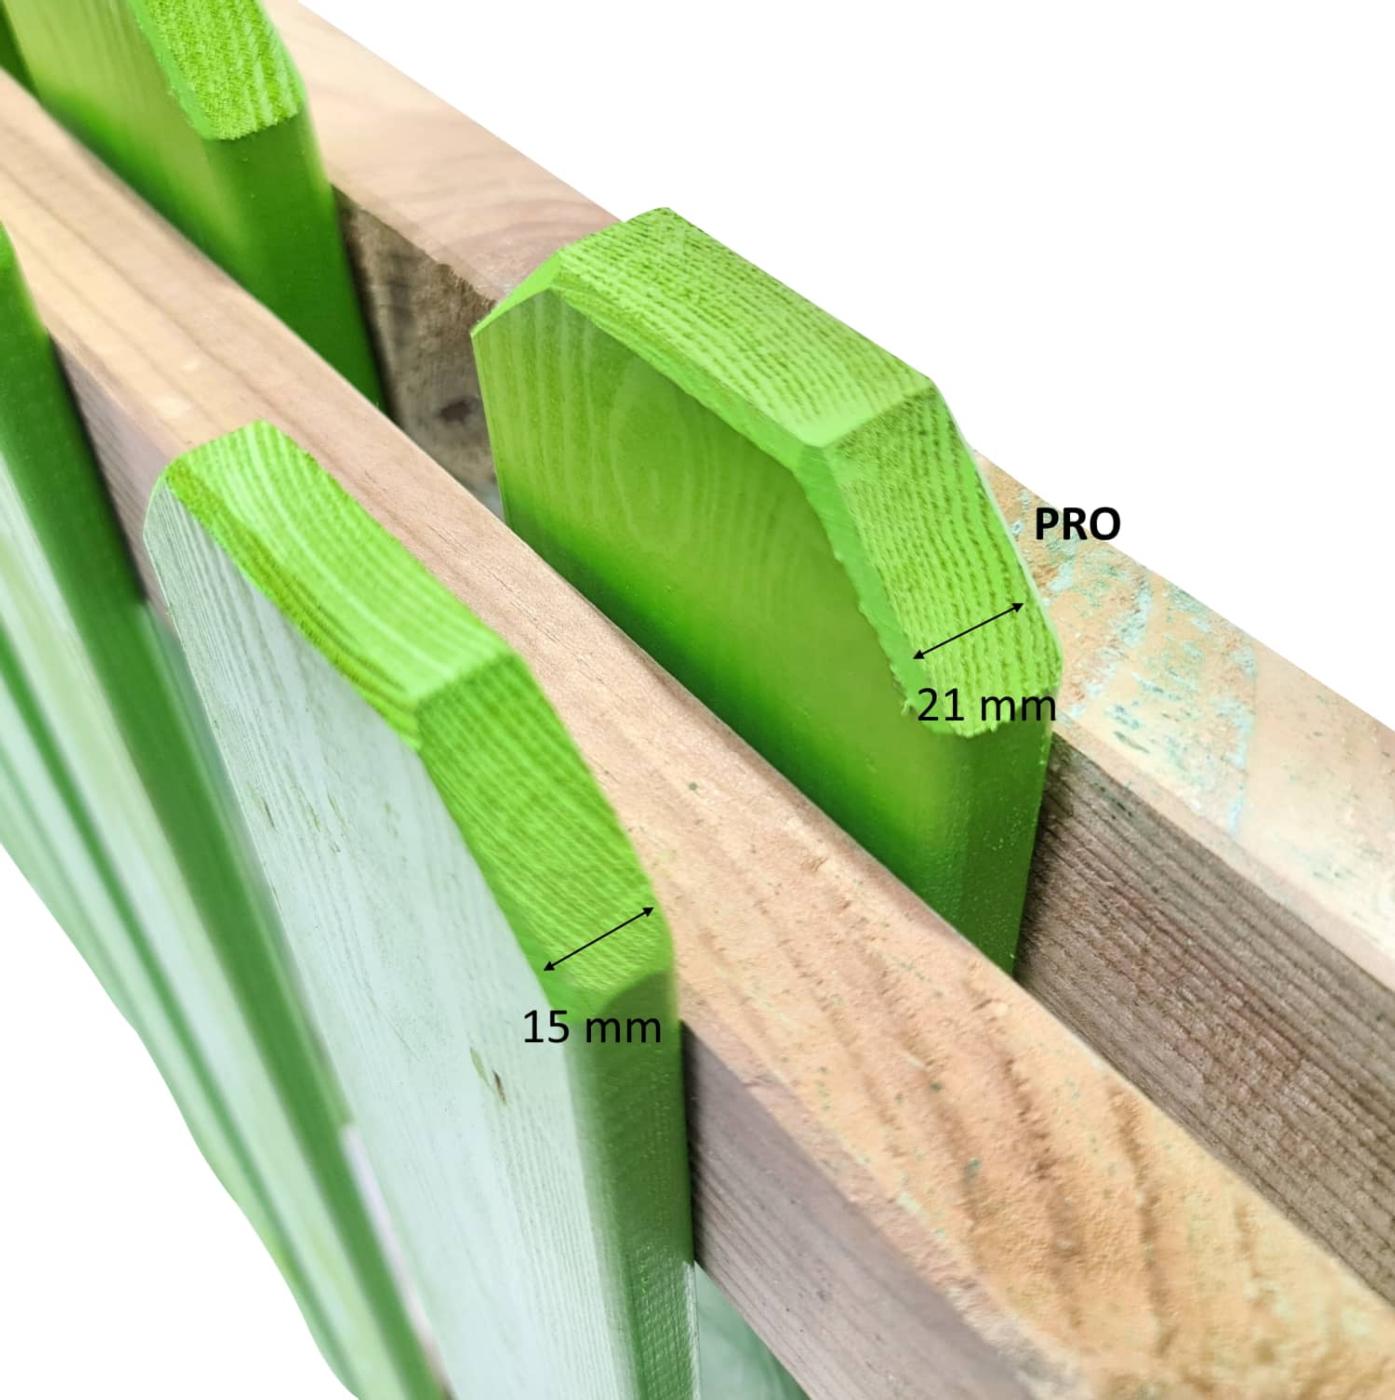 Valla de madera tratada para exterior de uso profesional homologada